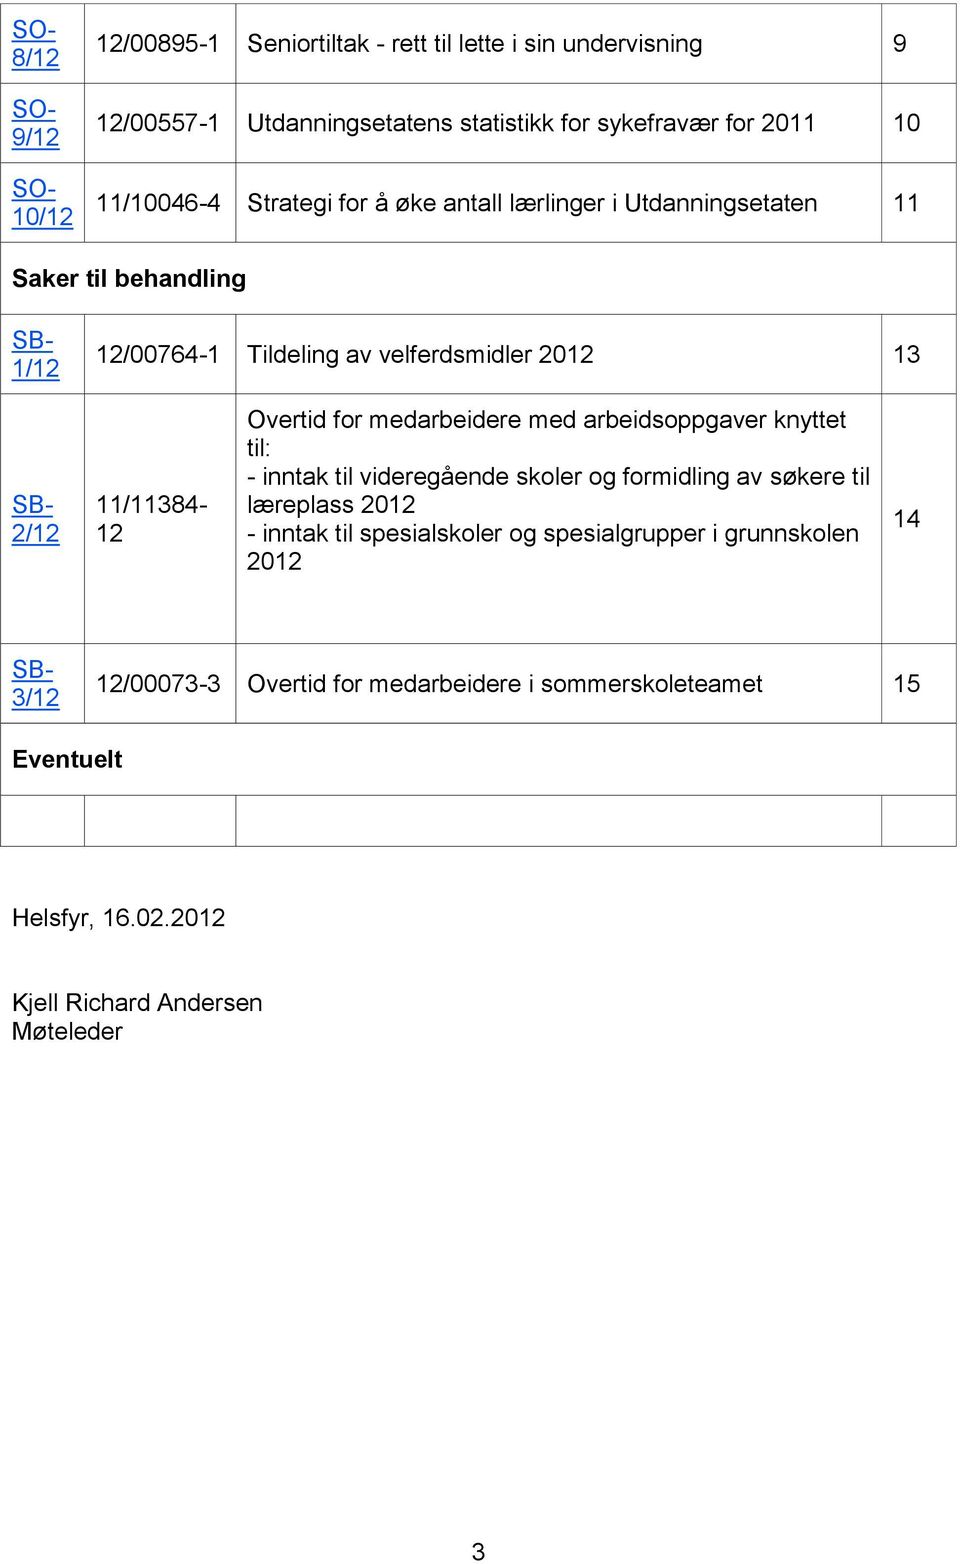 11/11384-12 Overtid for medarbeidere med arbeidsoppgaver knyttet til: - inntak til videregående skoler og formidling av søkere til læreplass 2012 - inntak til